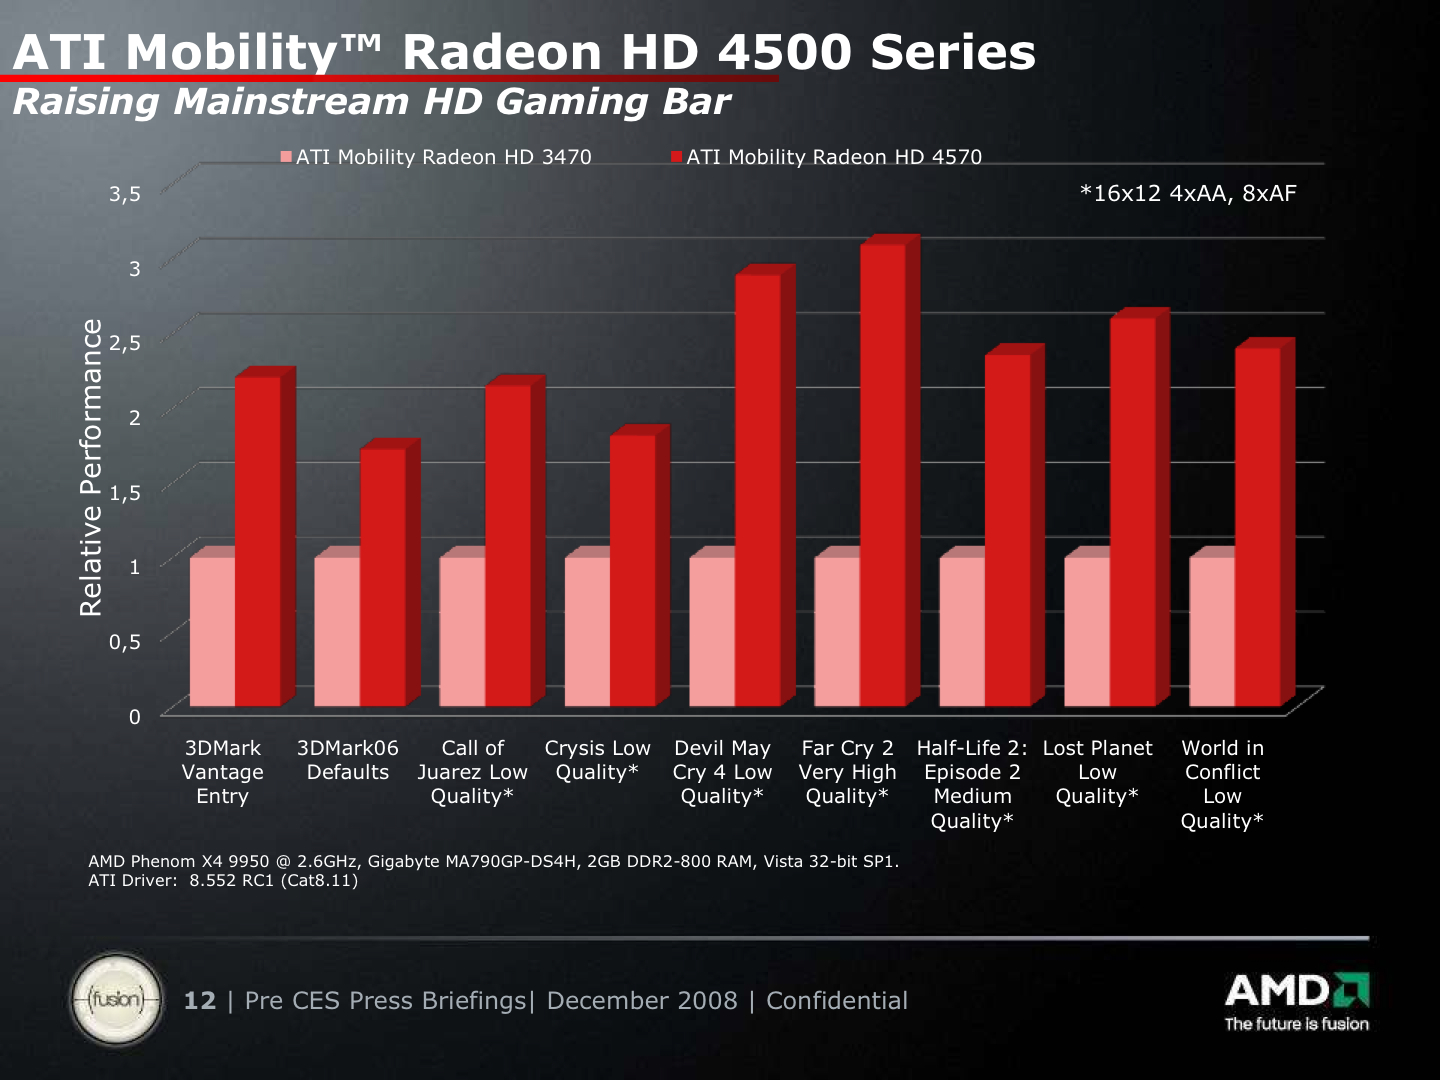 AMD ATI Mobility Radeon HD 4570 